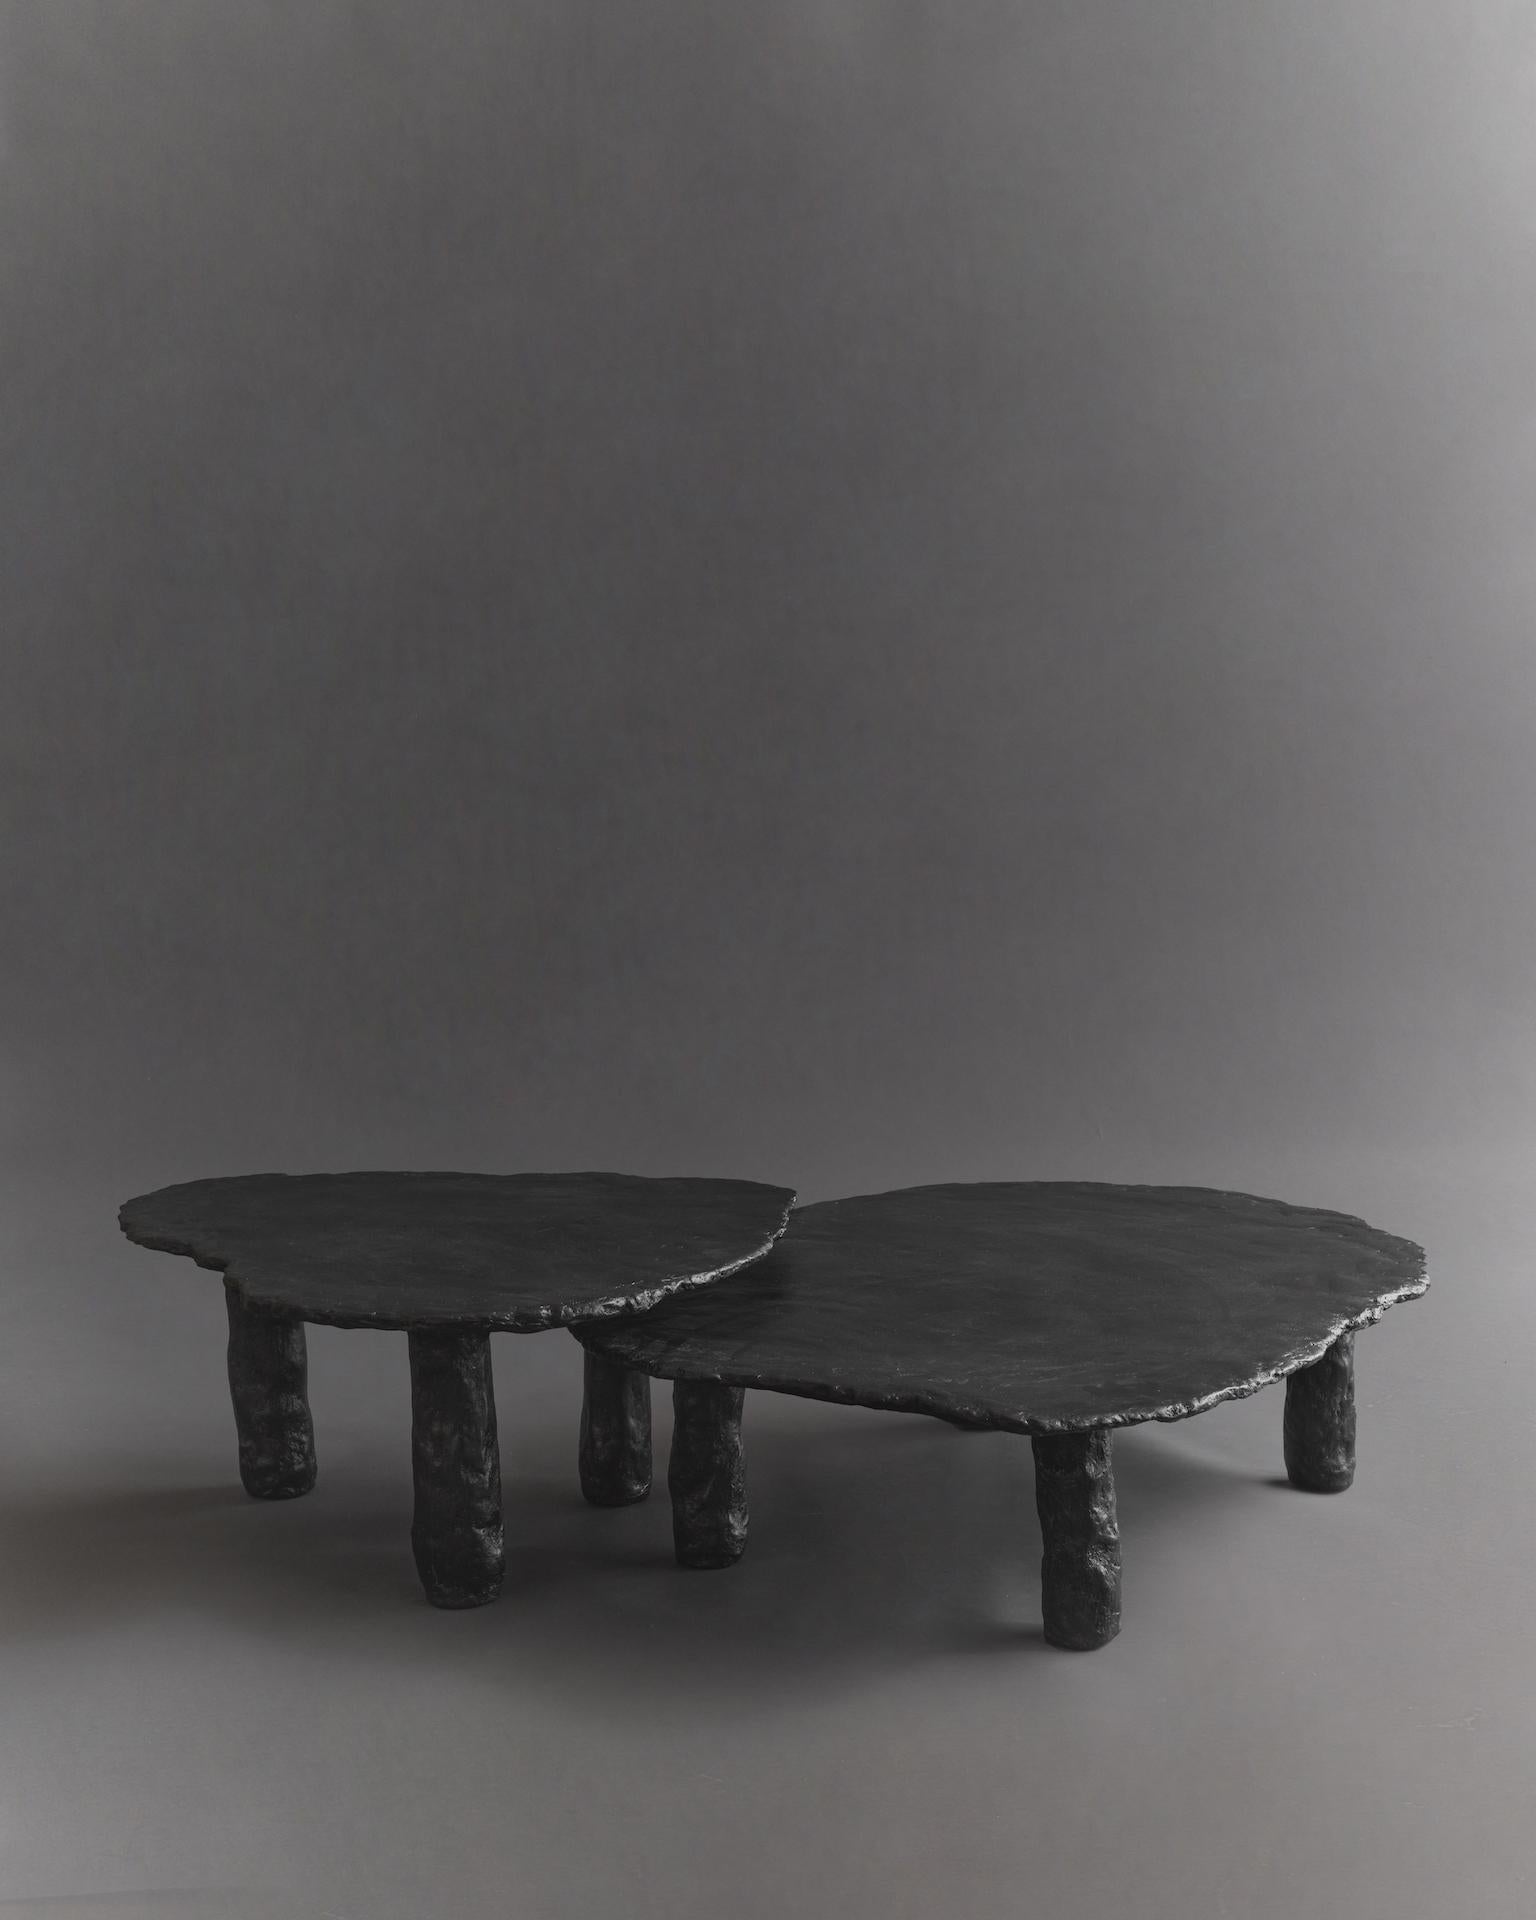 Inspirée par les dalles de pierre, cette table incarne la texture, les formes organiques et l'attention portée aux détails. Chaque produit est fabriqué à la main sur commande, ce qui entraîne de légères variations par rapport à la photo. Chaque